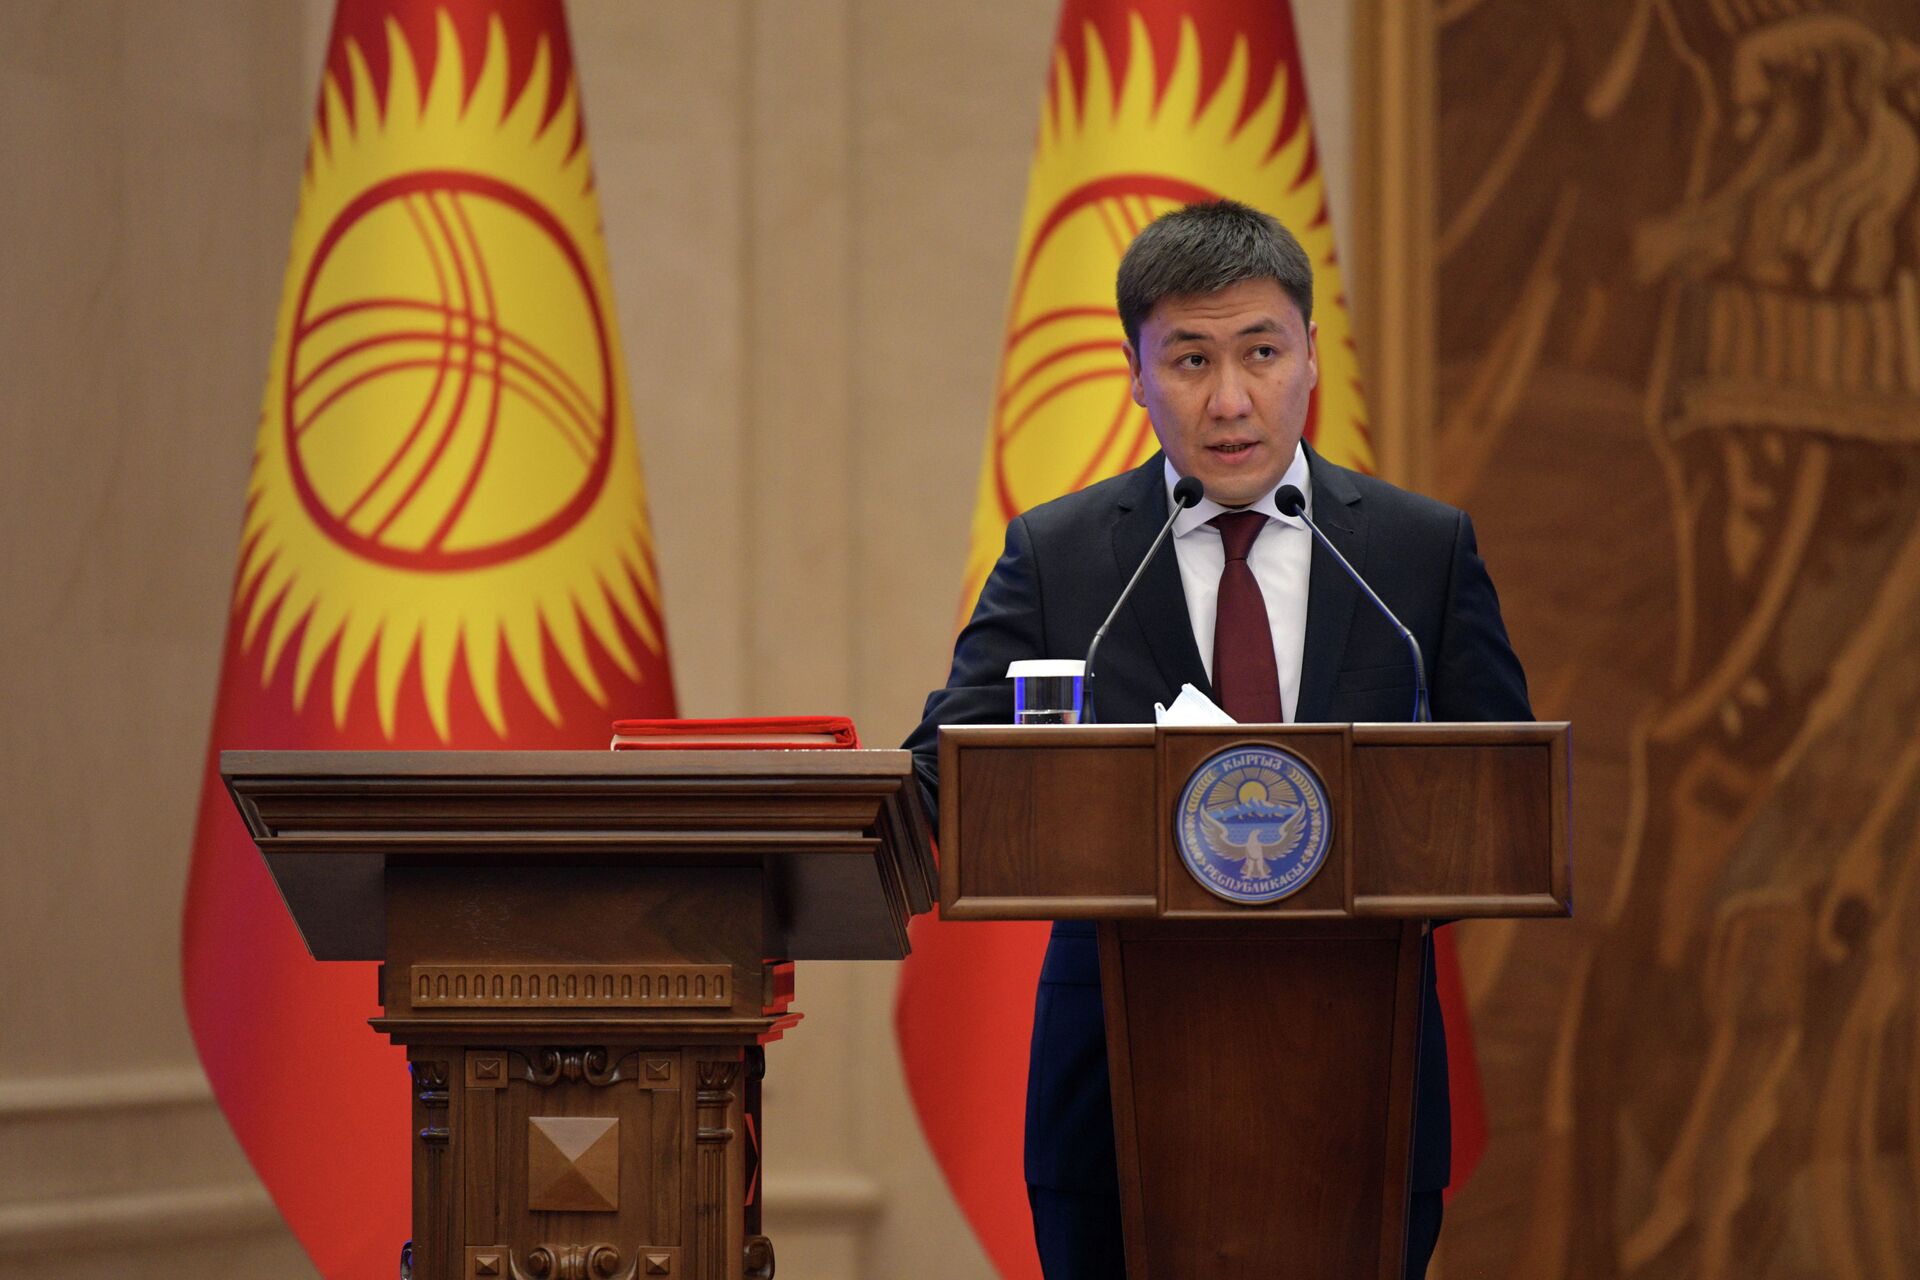 Какие послы Кыргызстана перед назначением не имели дипломатического опыта - Sputnik Кыргызстан, 1920, 09.08.2021